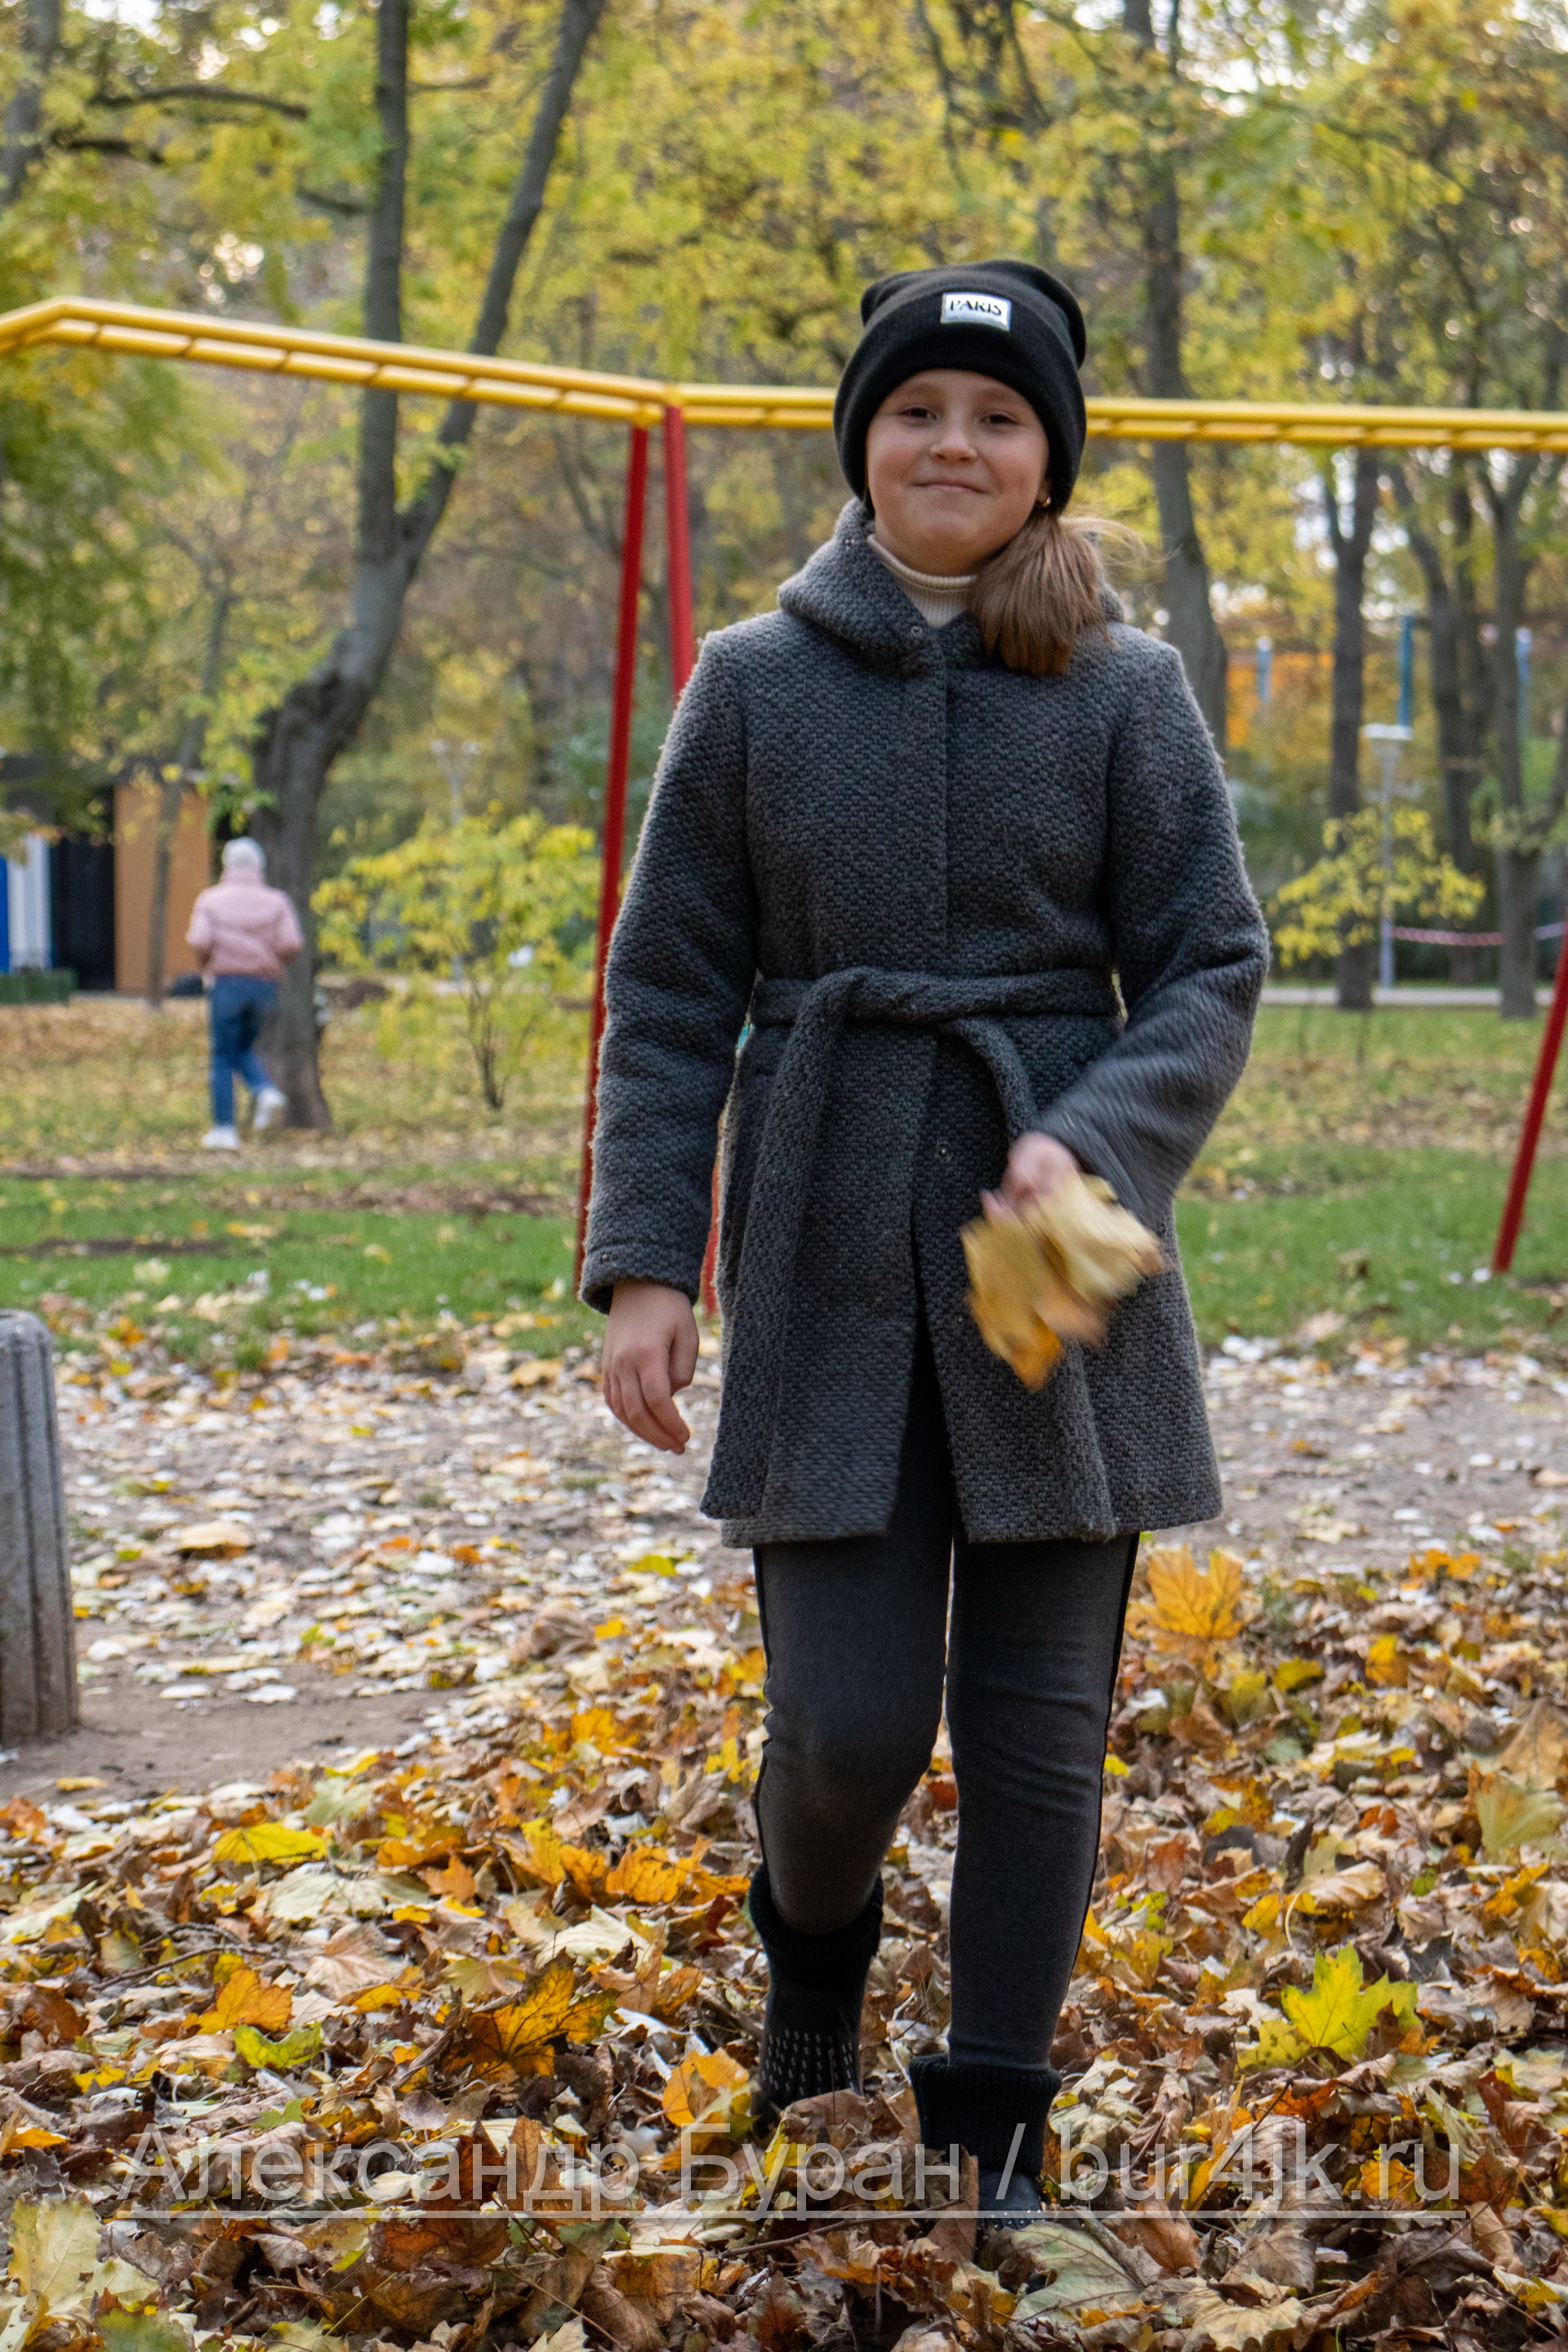 Девушка в сером пальто с листьями в руках в осеннем парке - Украина, Одесса, 17,10,2019